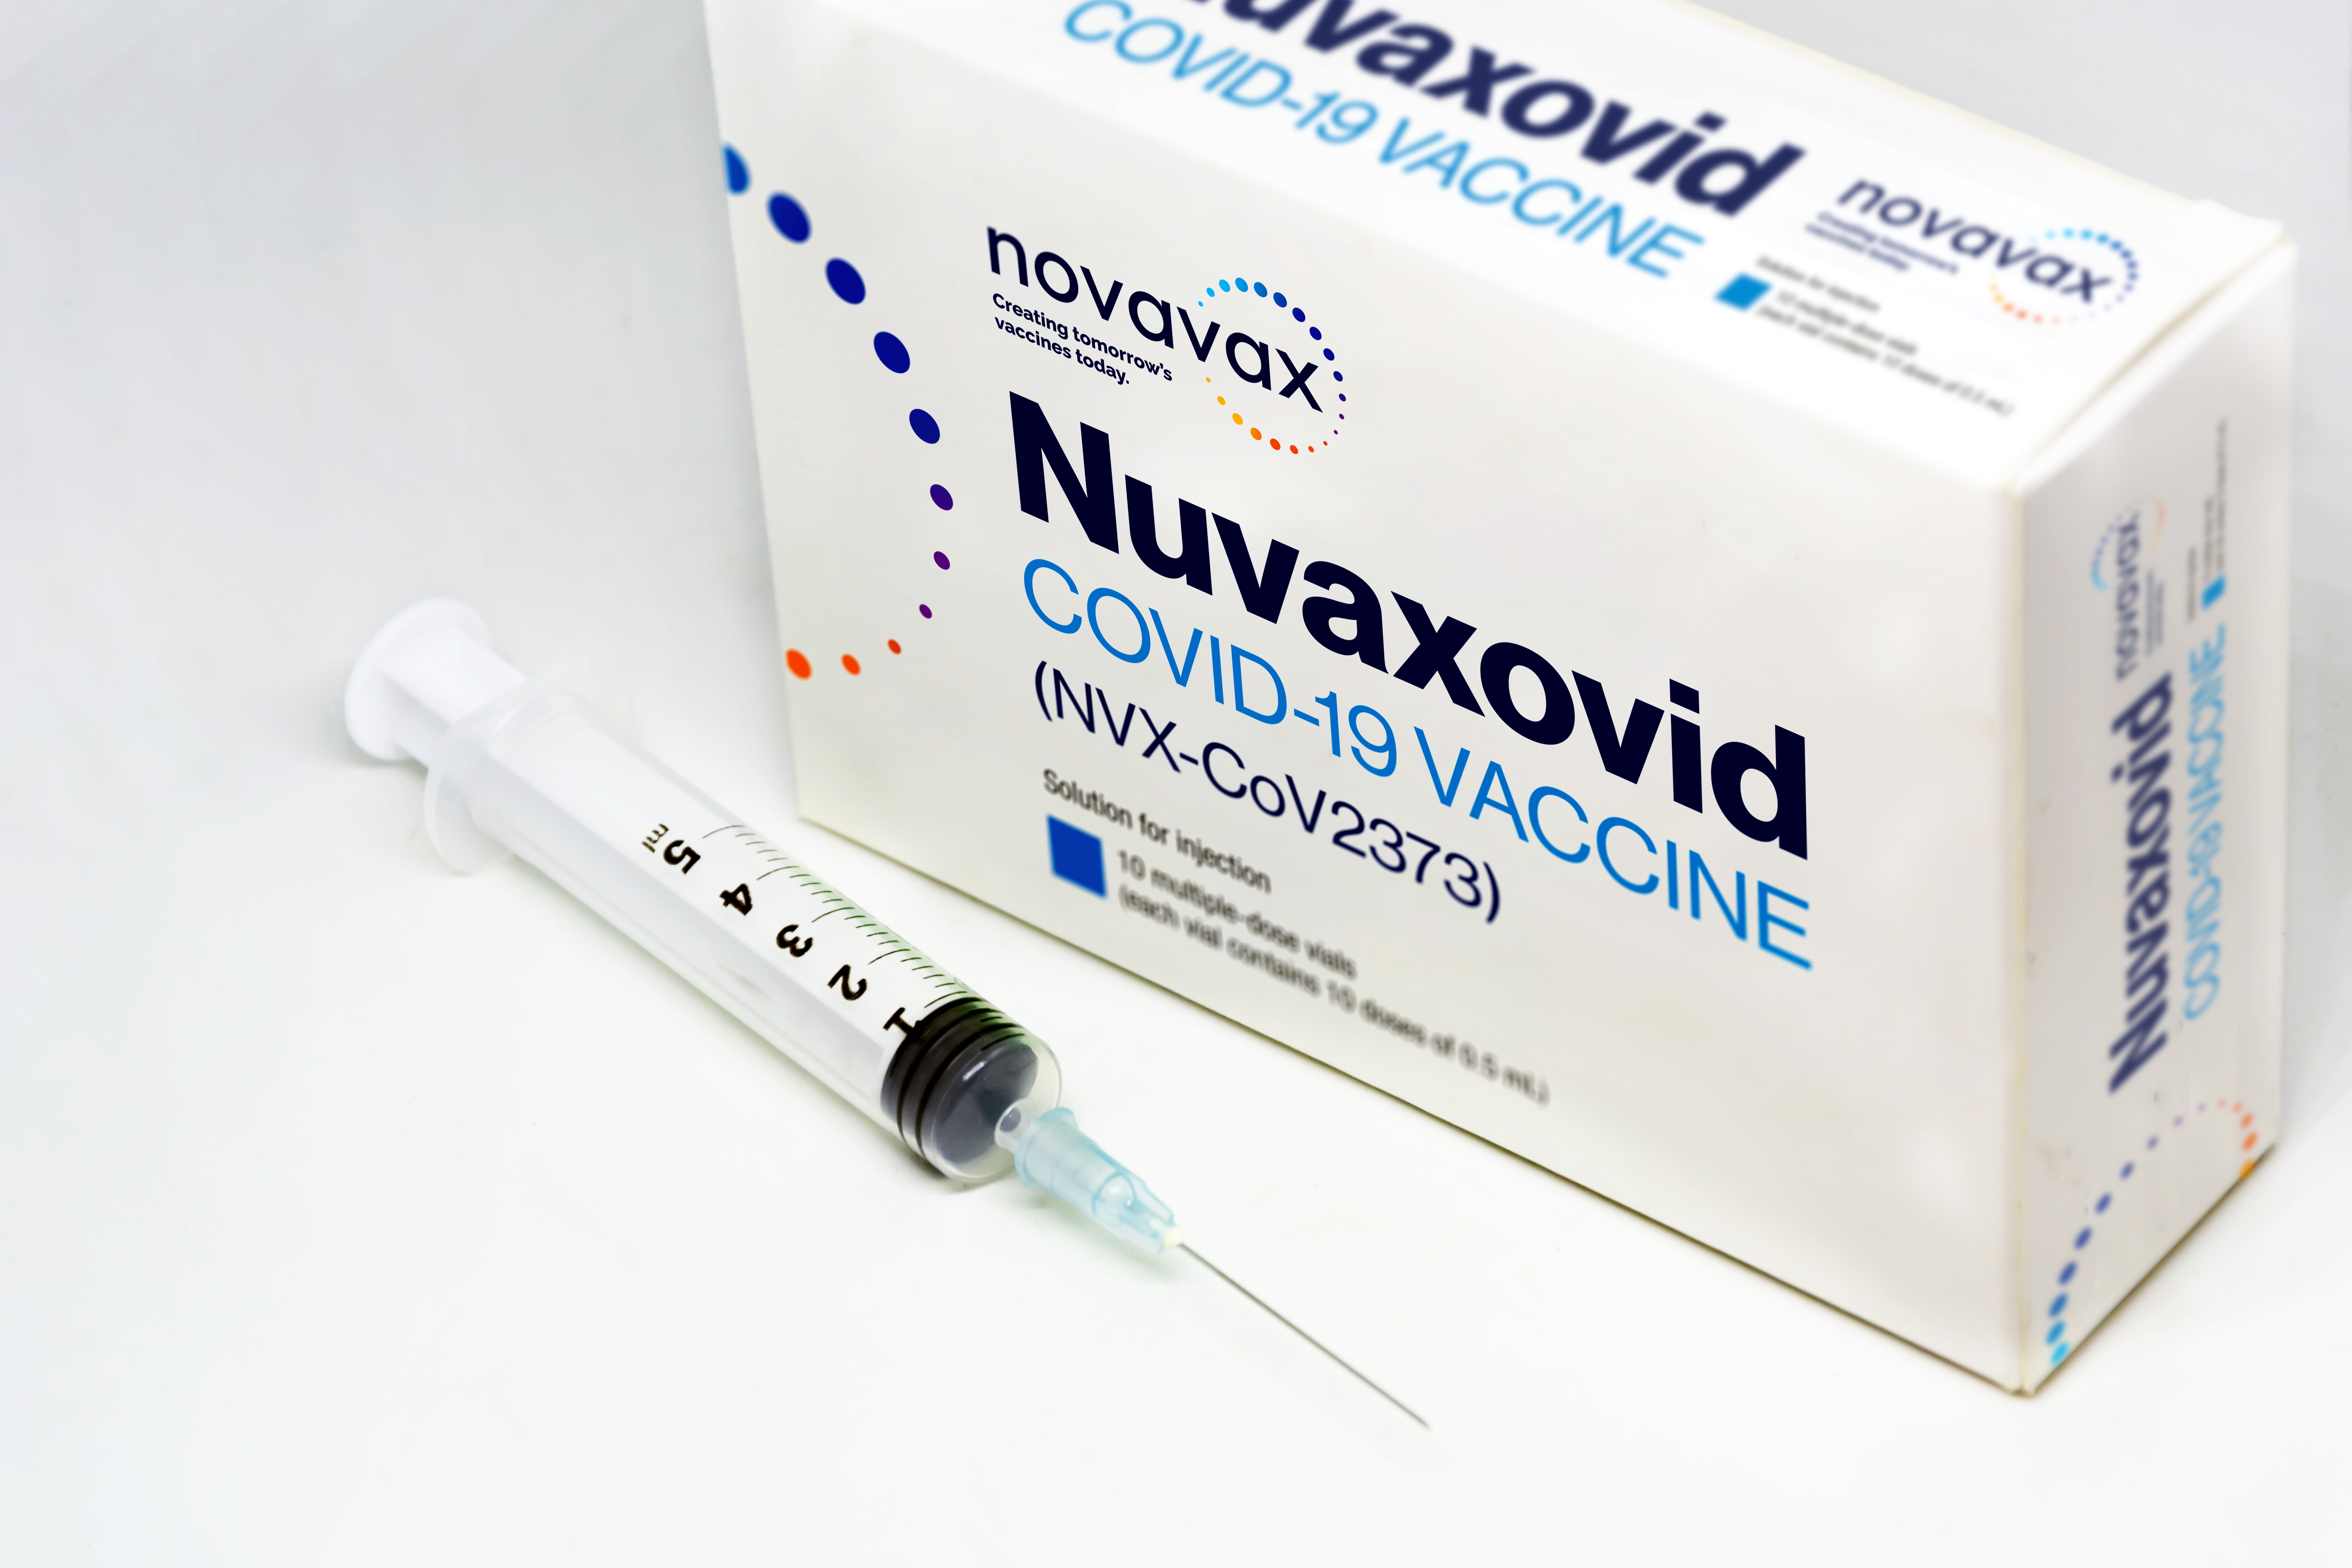     Covid: les territoires ultramarins recevront en priorité le vaccin Novavax

